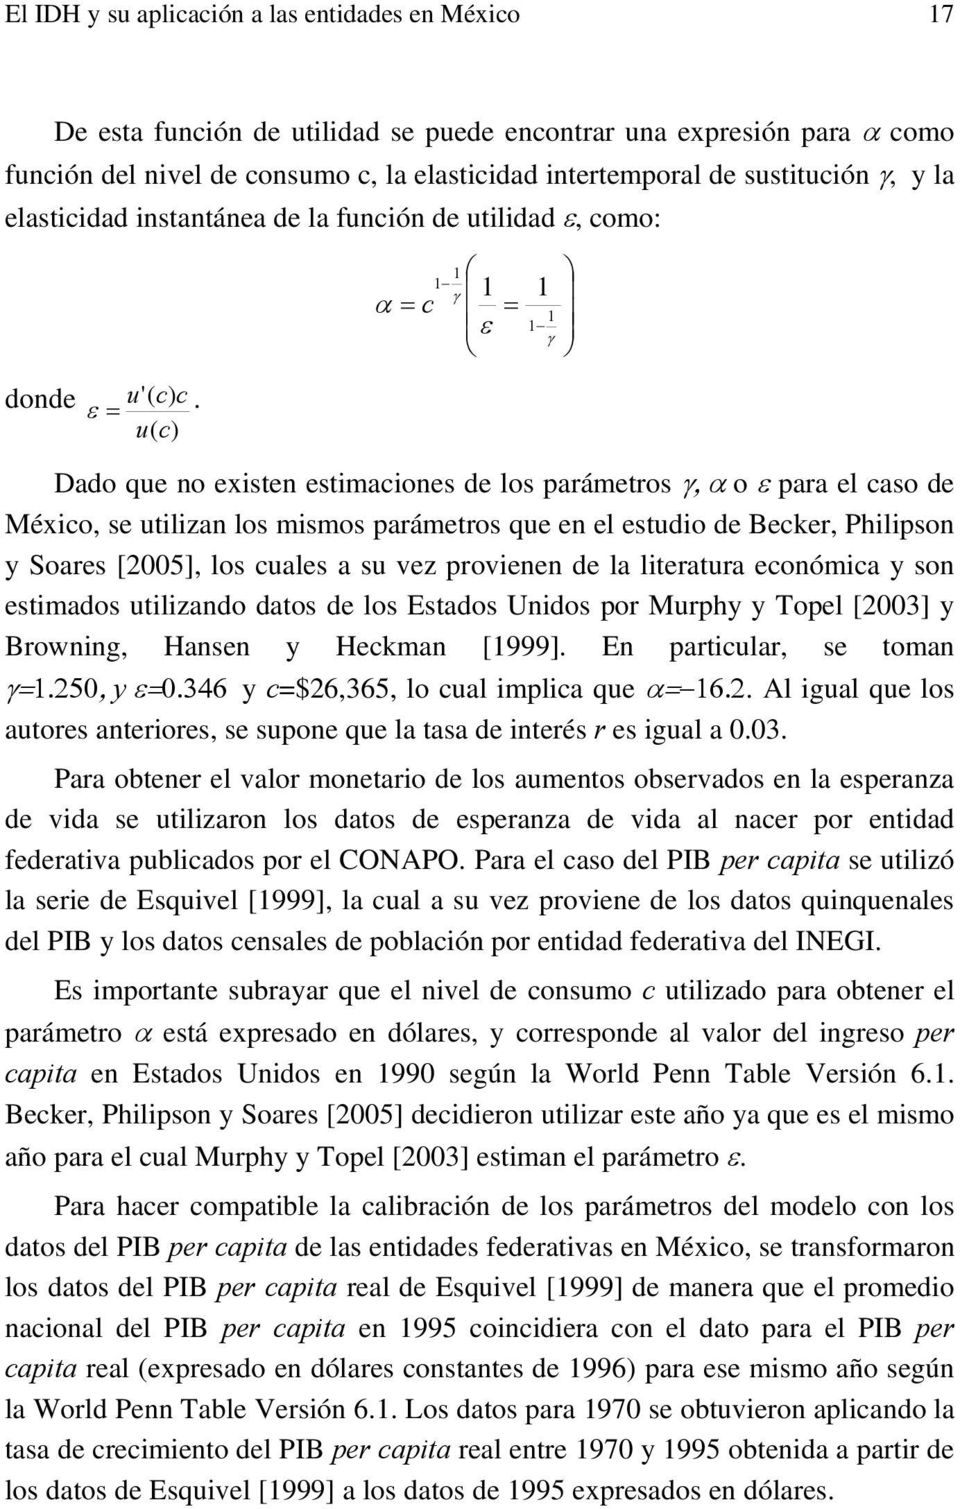 u( c) Dado que no exsten estmacones de los parámetros γ, α o ε para el caso de Méxco, se utlzan los msmos parámetros que en el estudo de Becker, Phlpson y Soares [5], los cuales a su vez provenen de